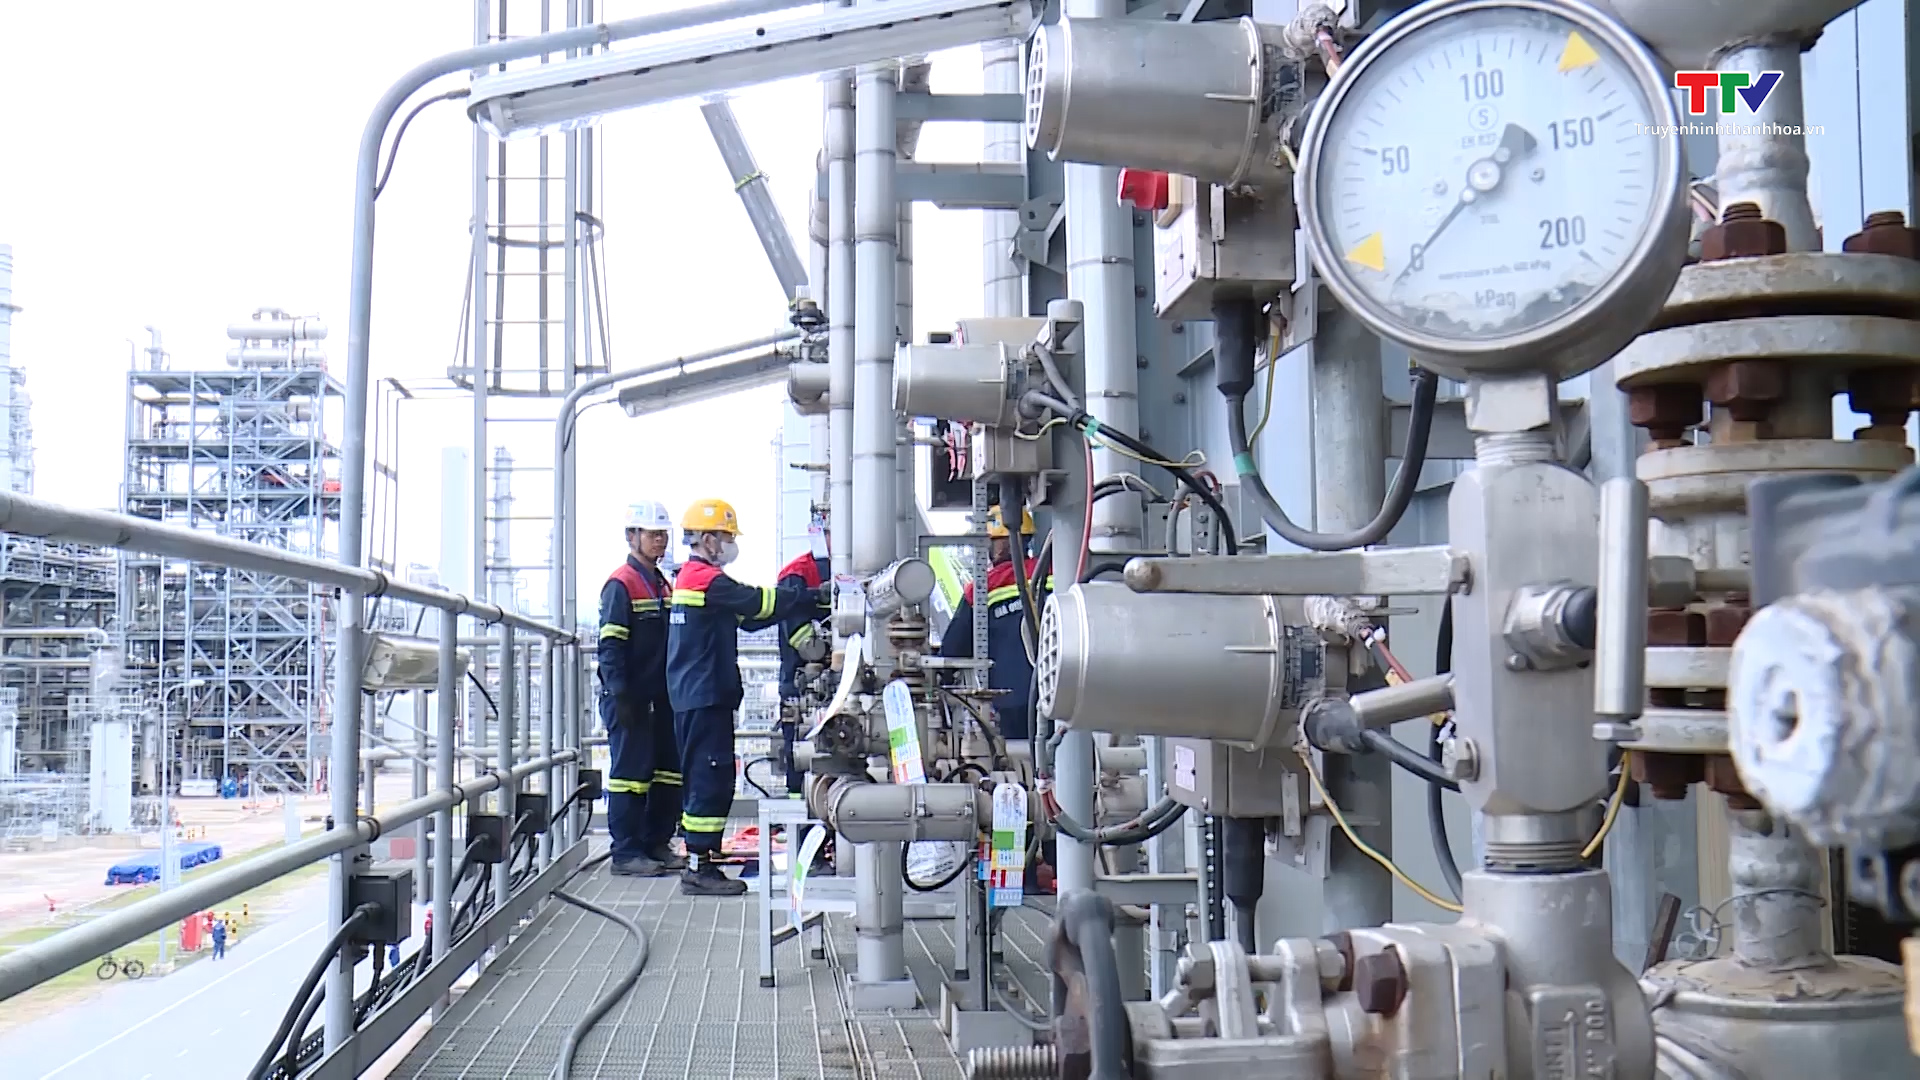 Bảo dưỡng tổng thể Nhà máy Lọc hóa dầu Nghi Sơn đã đạt 52% kế hoạch - Ảnh 8.